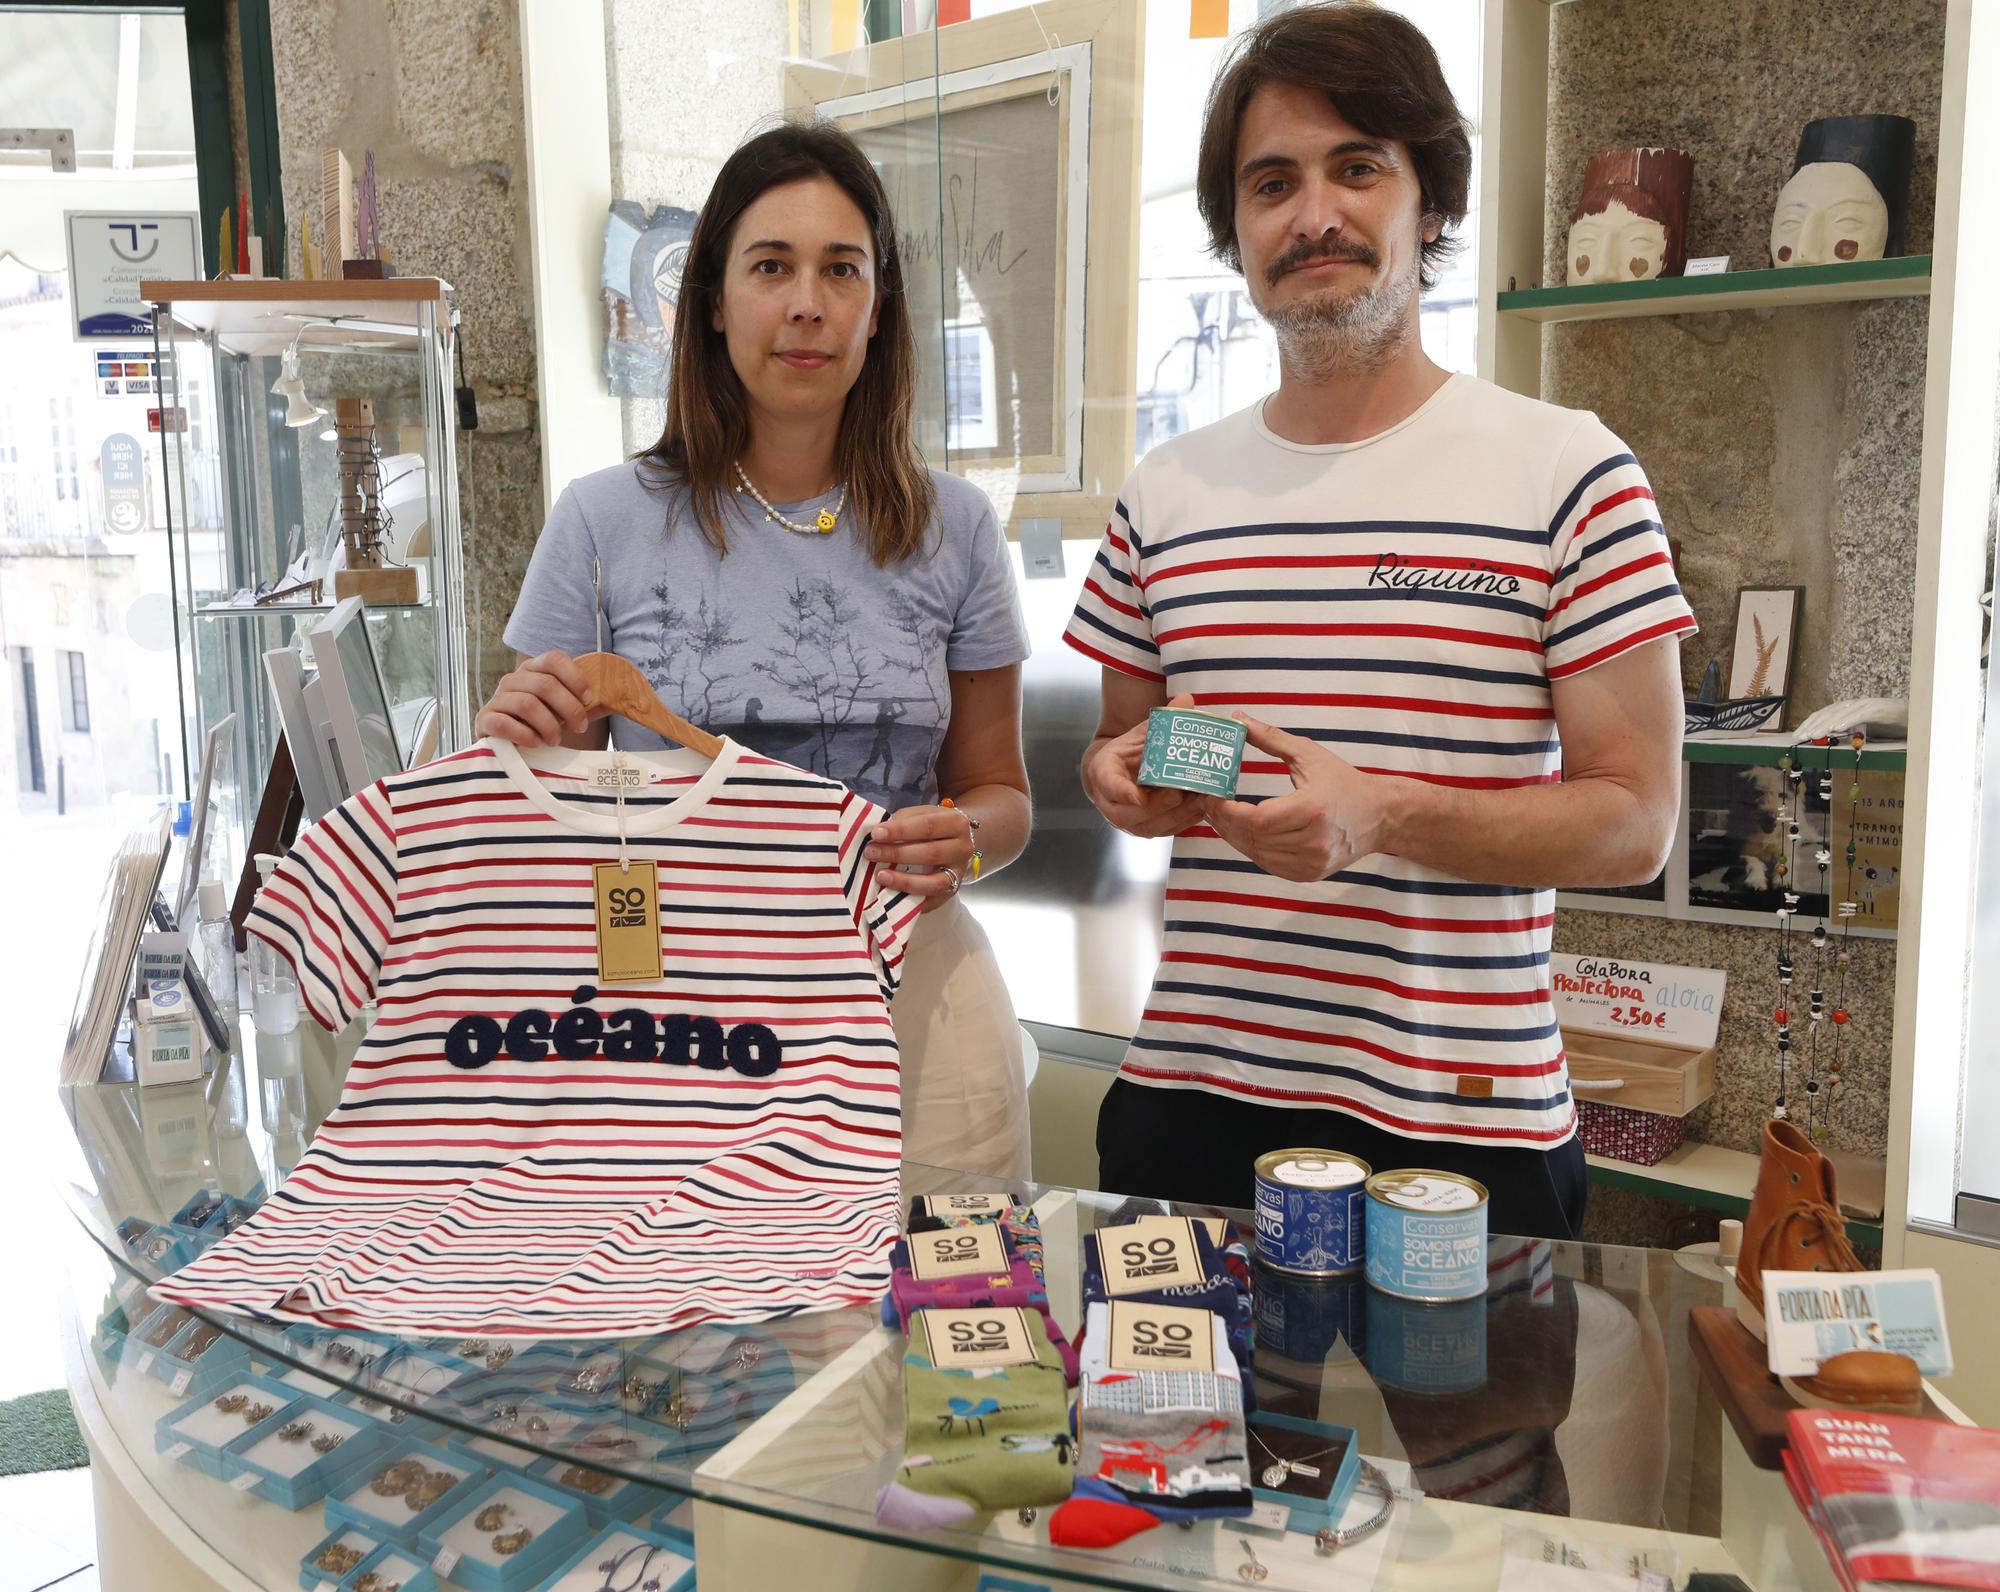 Ana Carpintero y Fran García, responsables de Somos Océano, en la tienda “Porta da Pía” de Tui, uno de los comercios locales en los que venden sus diseños